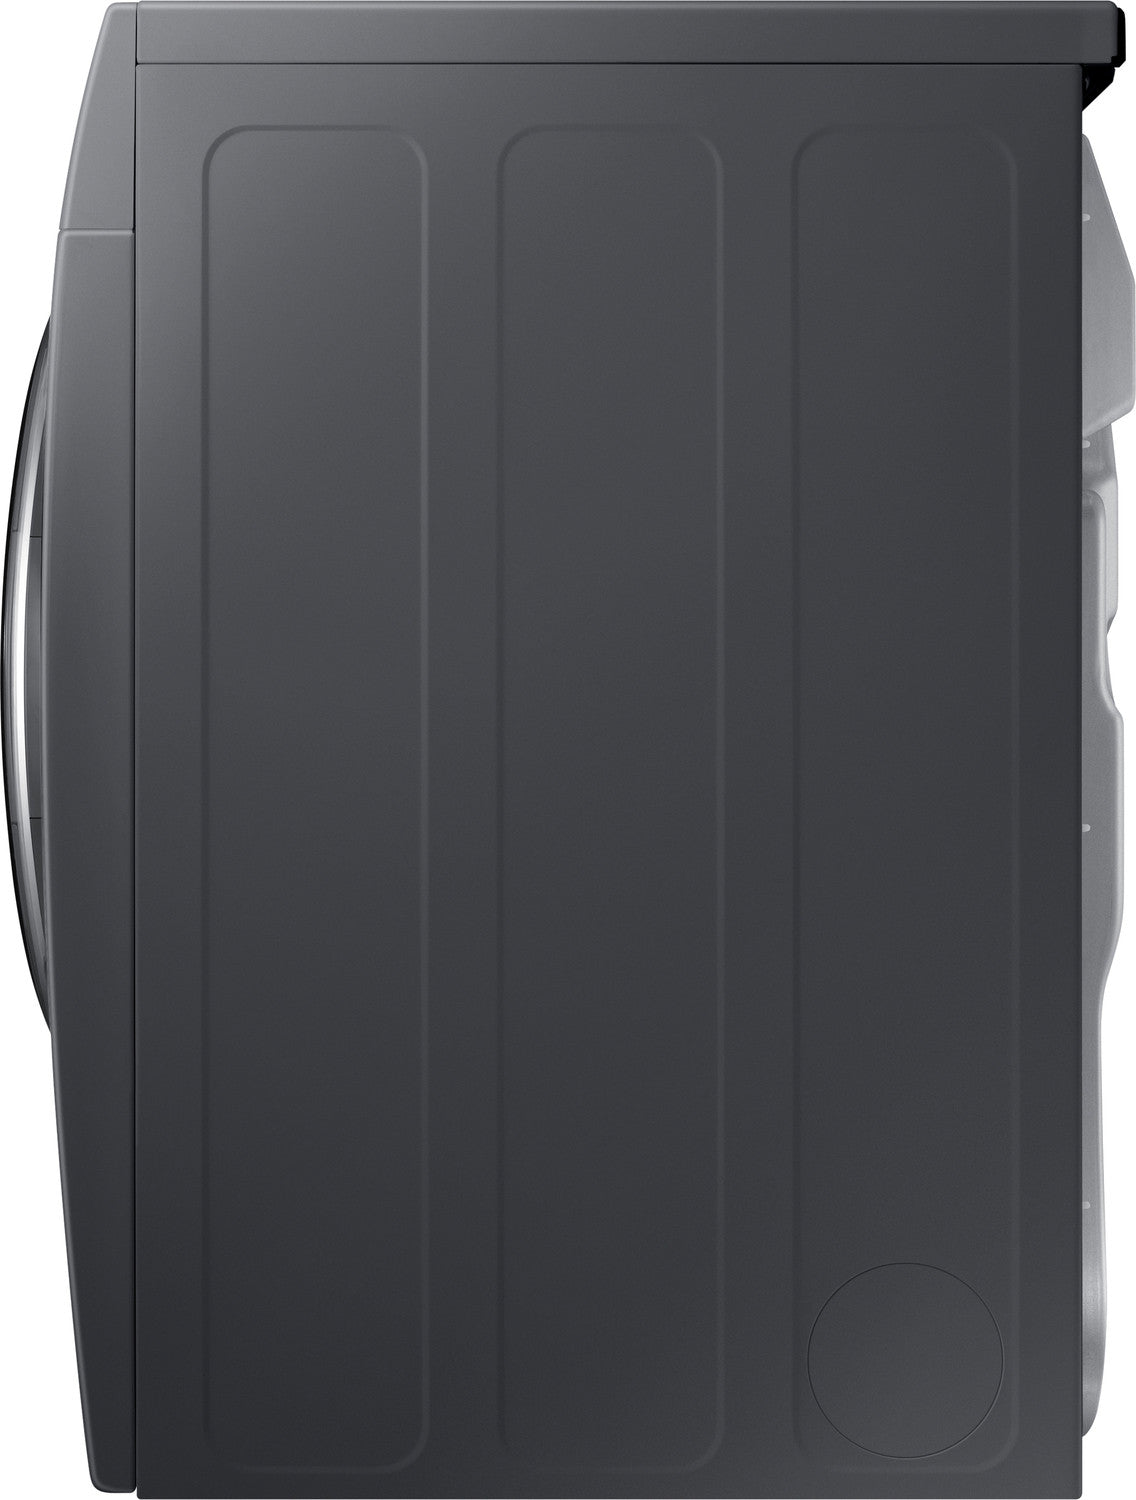 Samsung Grey Electric Dryer (4.0 Cu. Ft.) - DV22K6800EX/AC